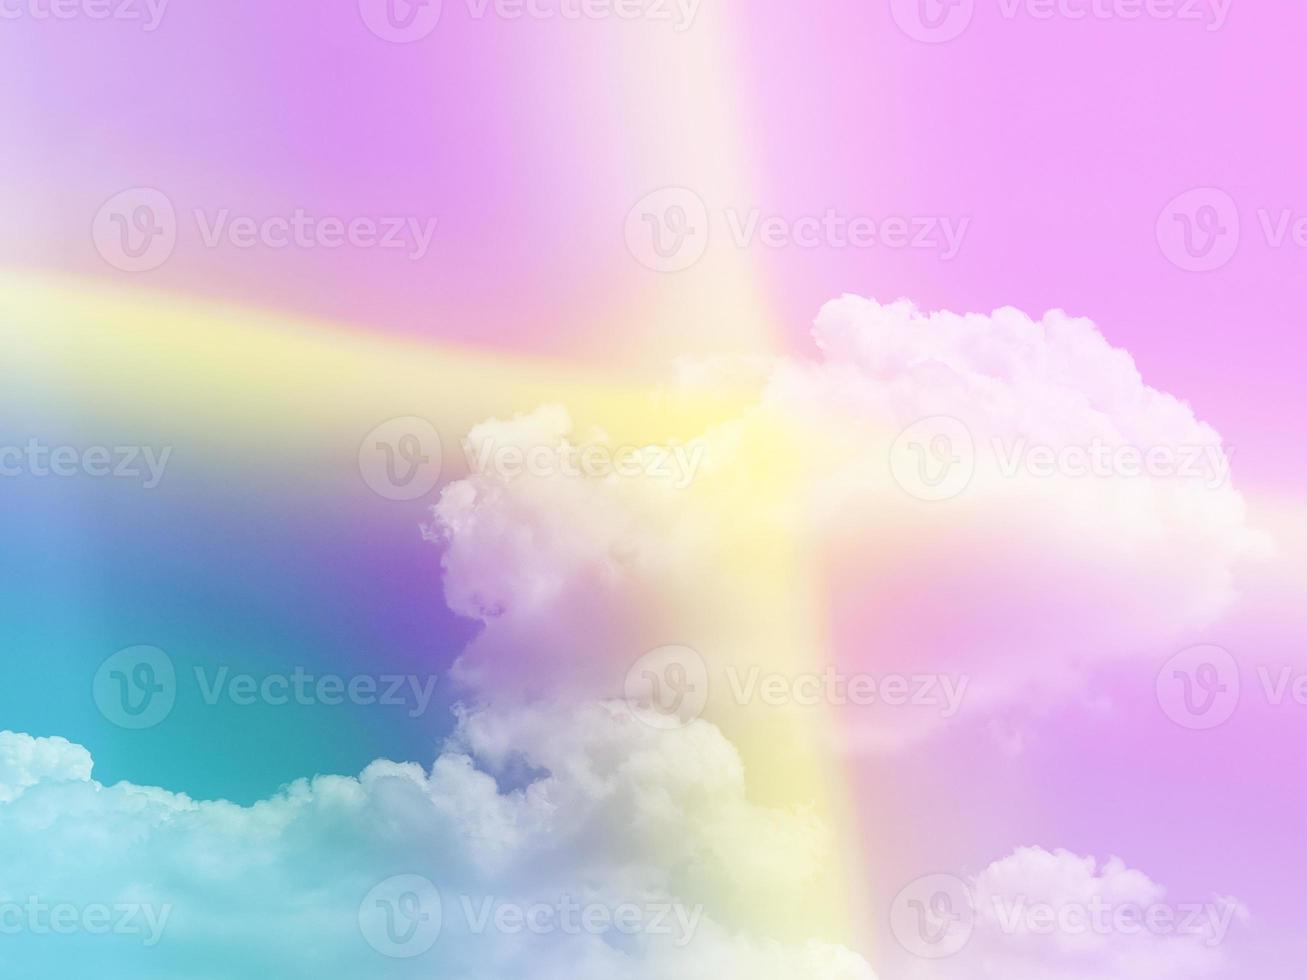 beleza doce pastel violeta cruz amarela luz colorida com nuvens fofas no céu. imagem multicolorida do arco-íris. fantasia abstrata luz crescente foto